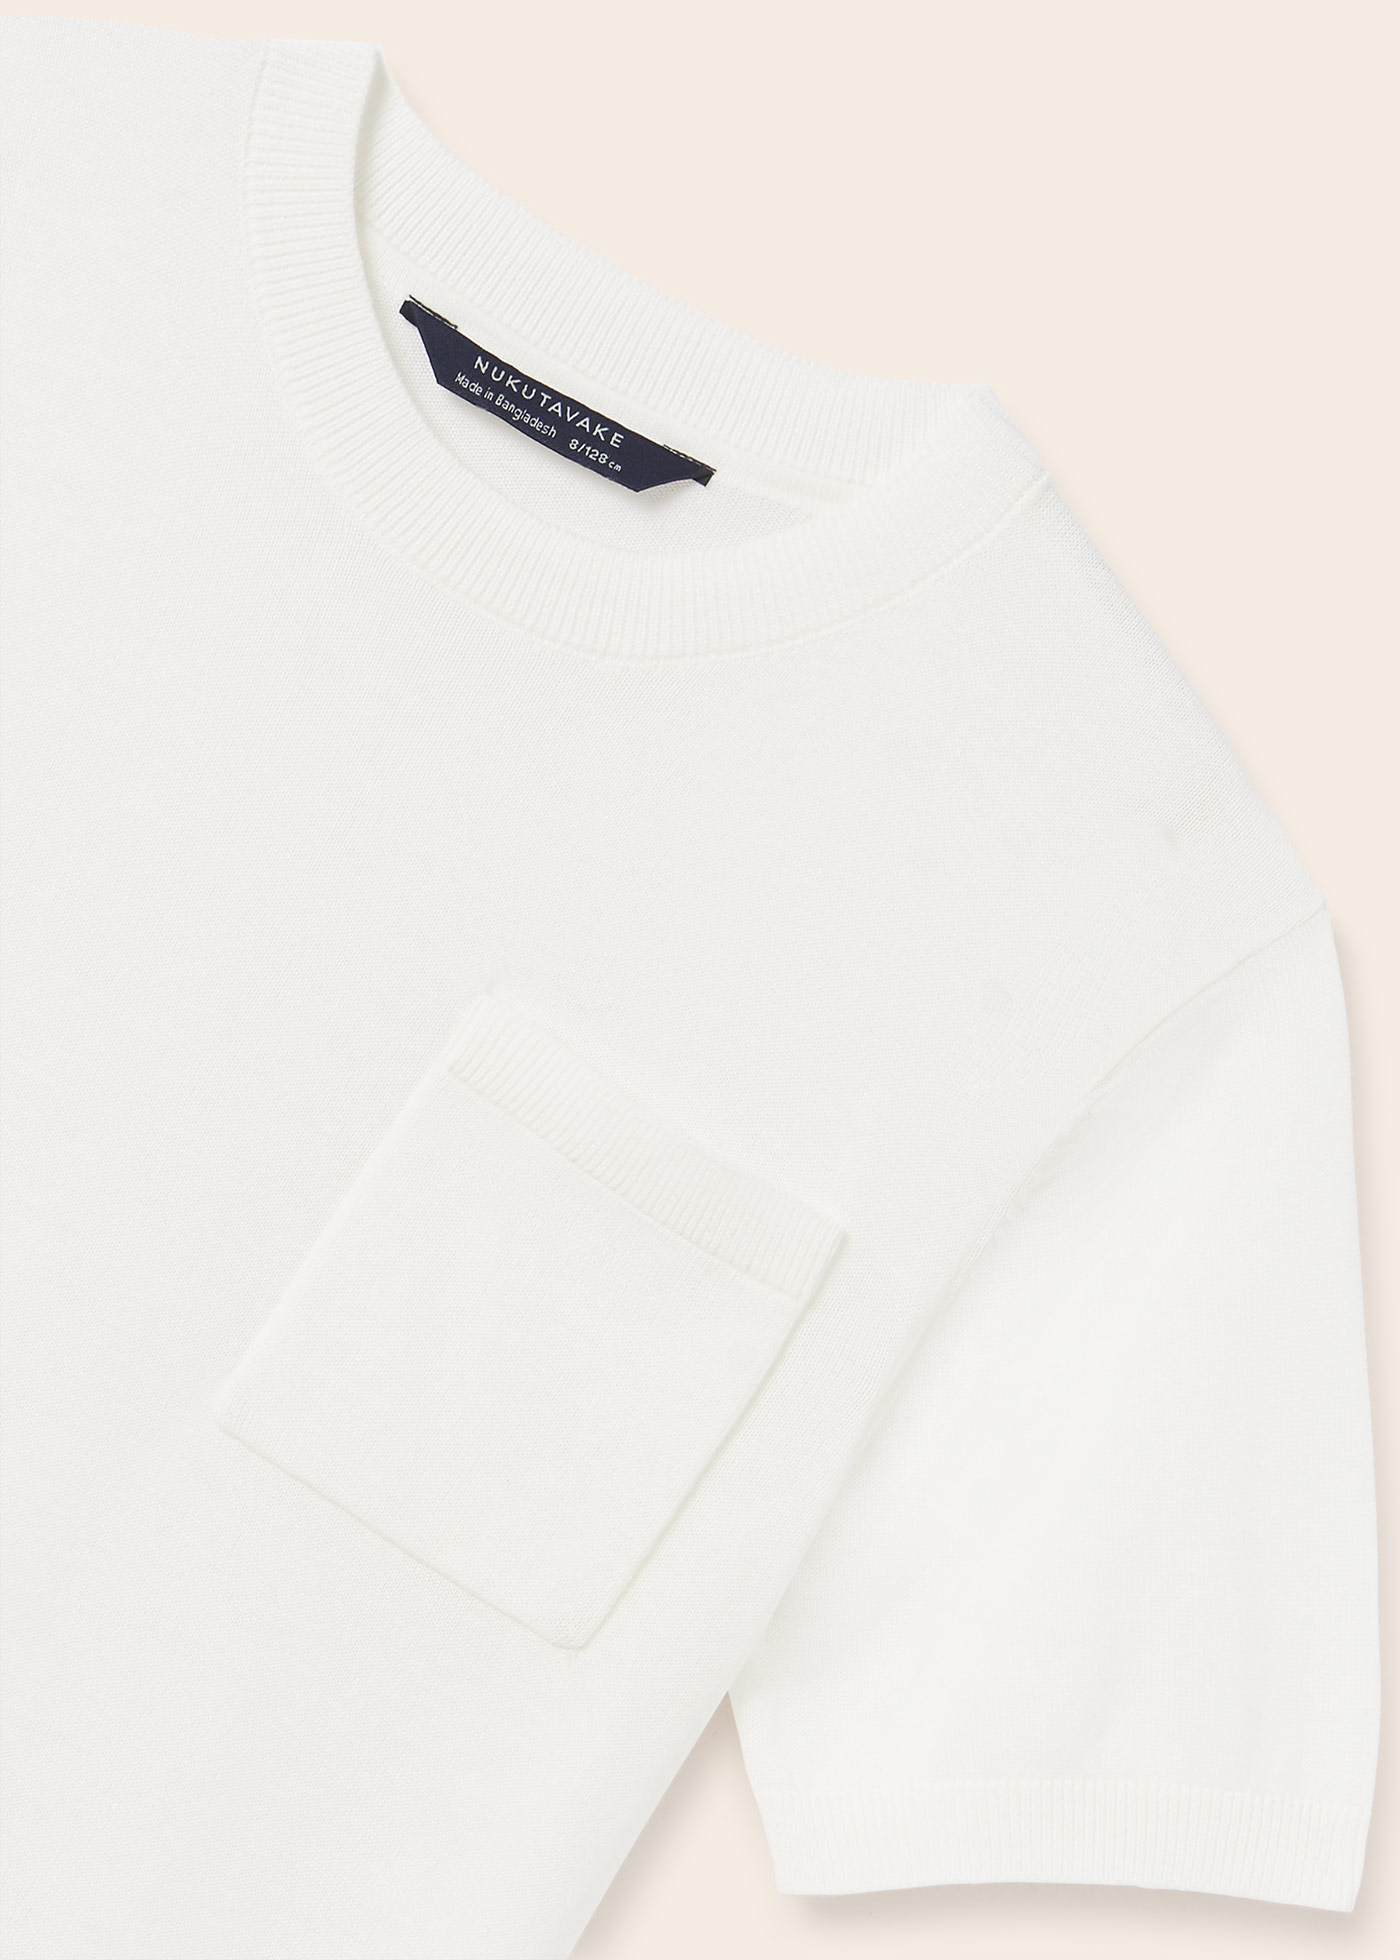 Louis Vuitton Signature 3D Pocket Monogram T-Shirt White. Size XL